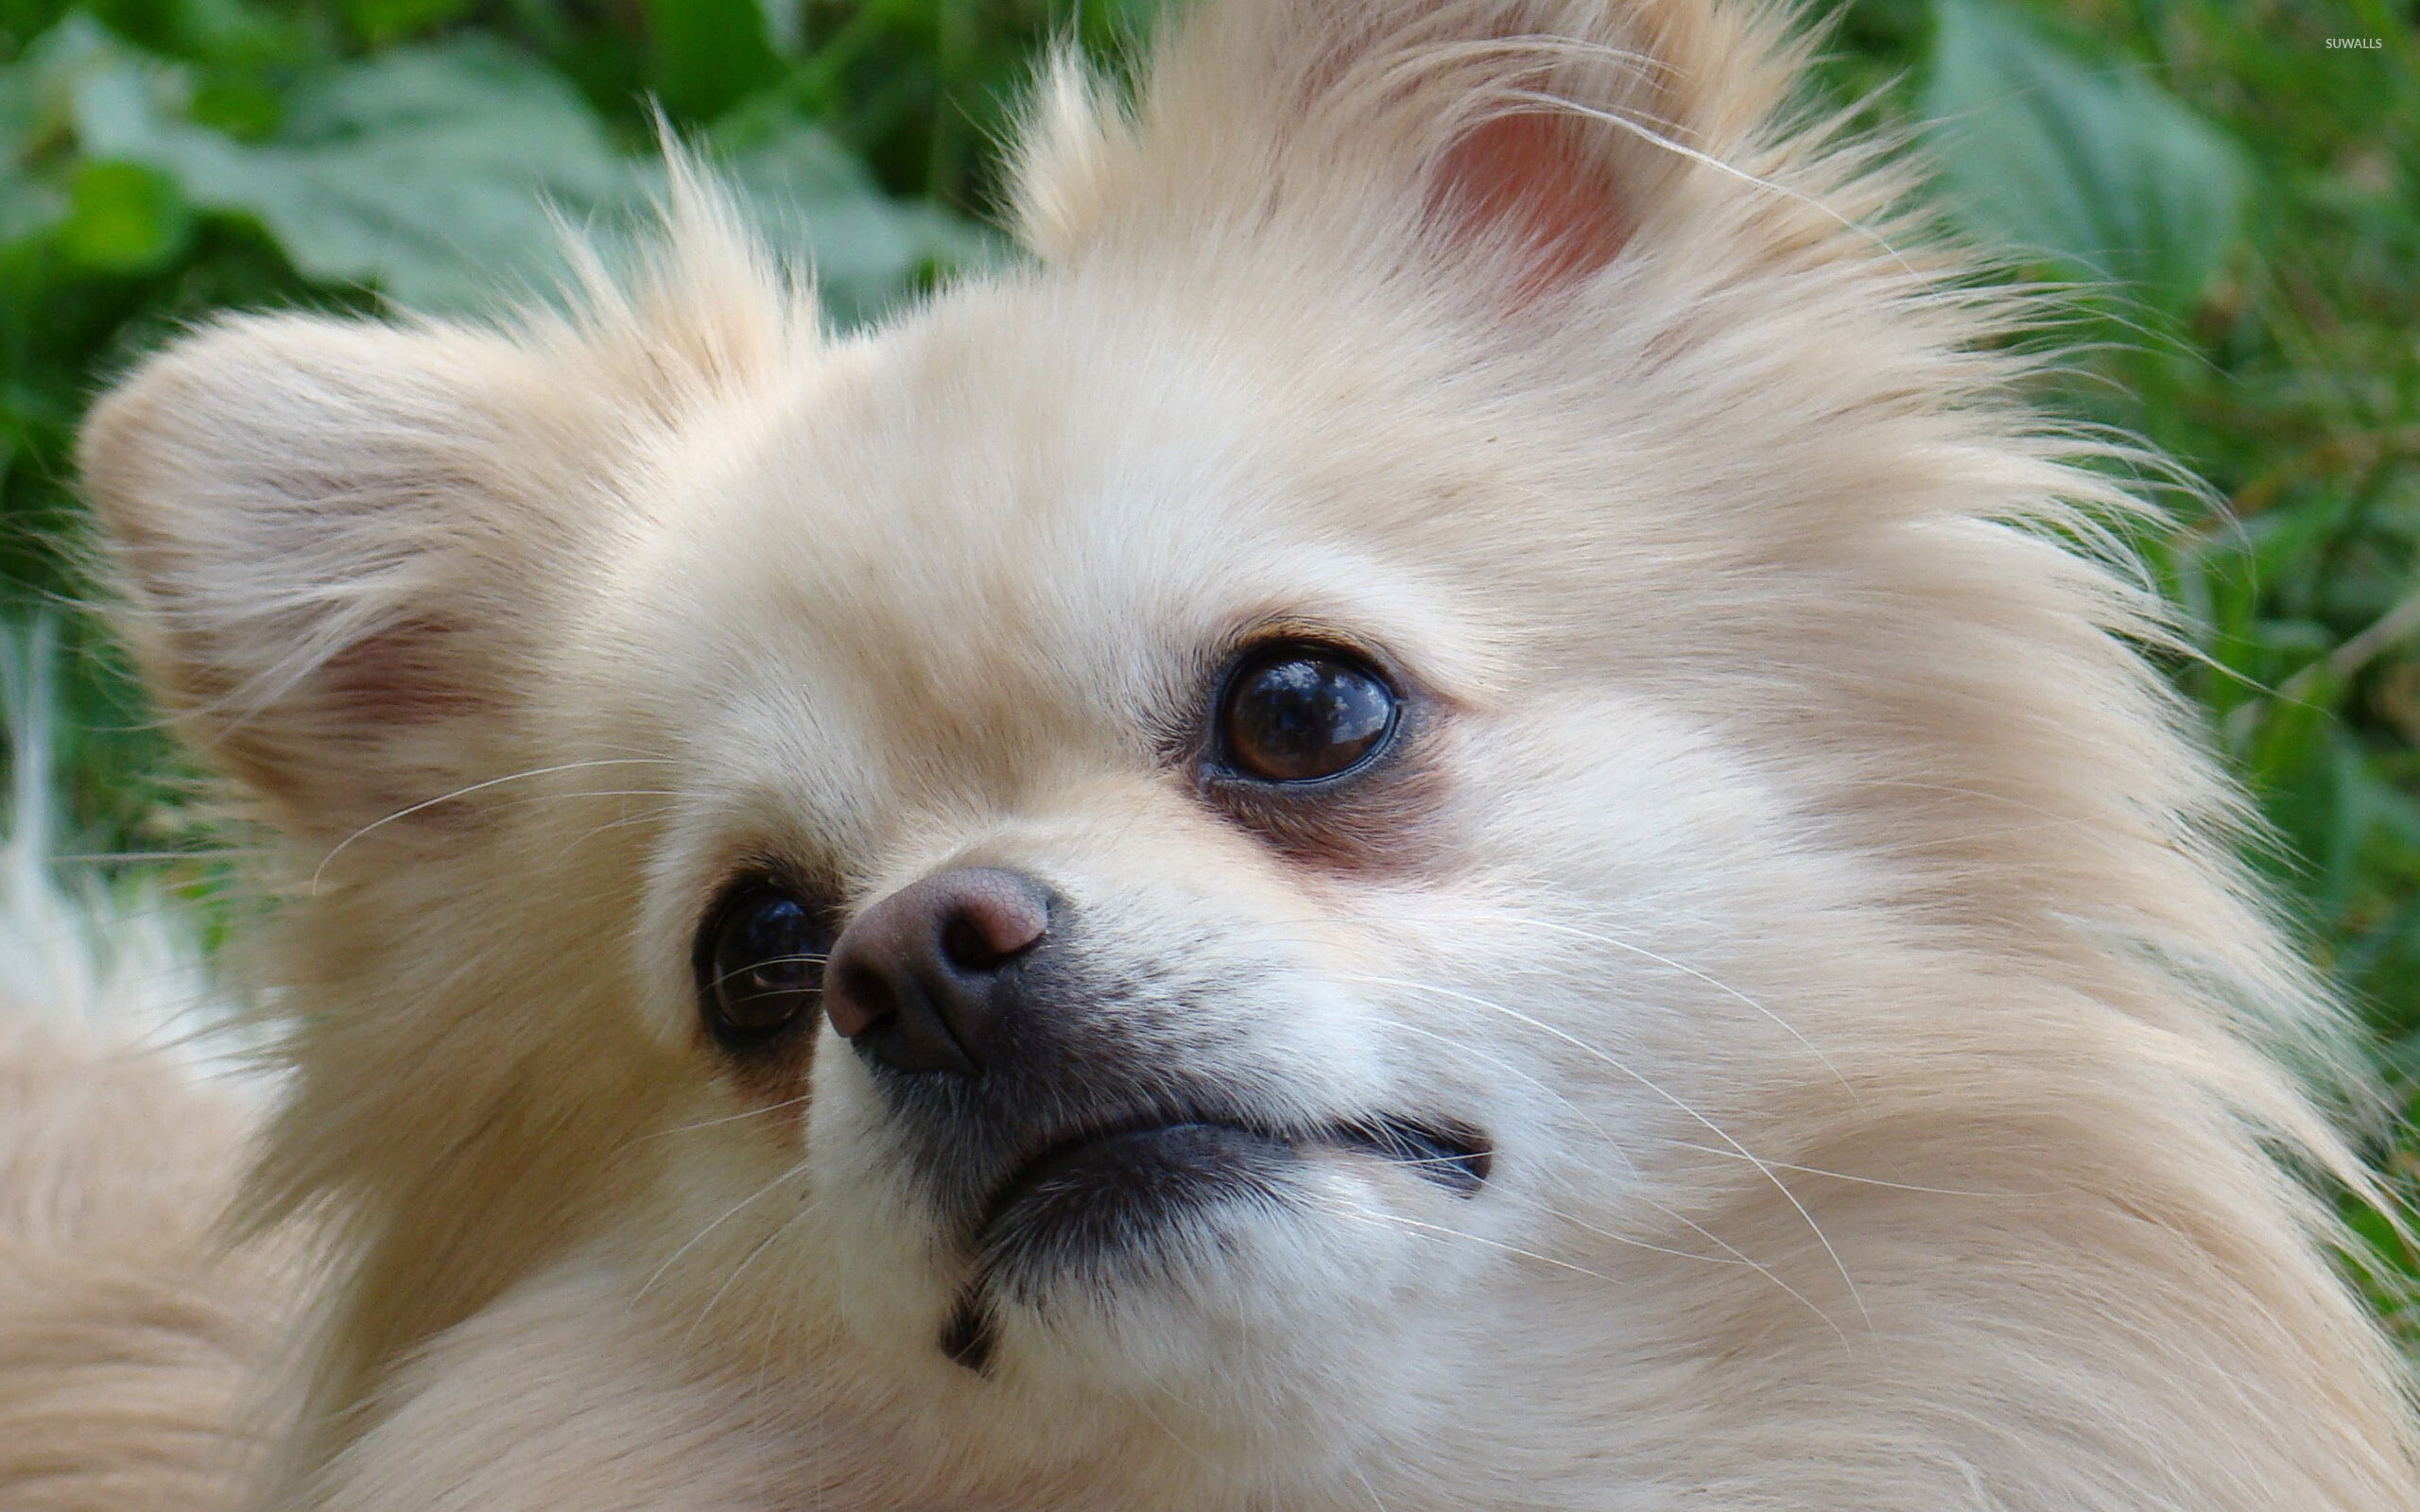 Pomeranian, Cute dog wallpaper, Adorable pet, Playful little pup, 2560x1600 HD Desktop